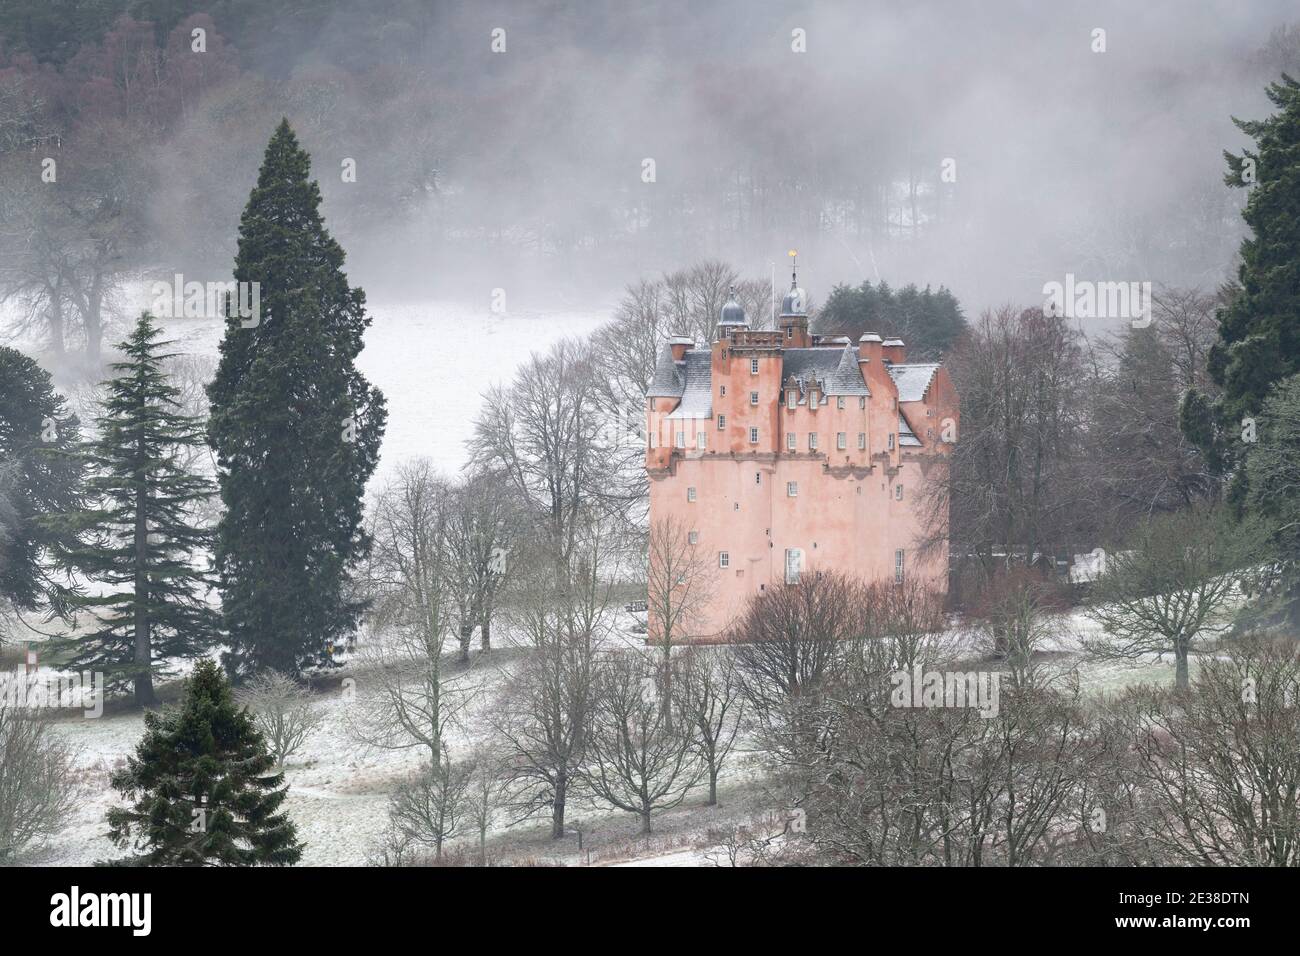 Château de Craigievar à Aberdeenshire sur une colline enneigée Un matin brumeux Banque D'Images